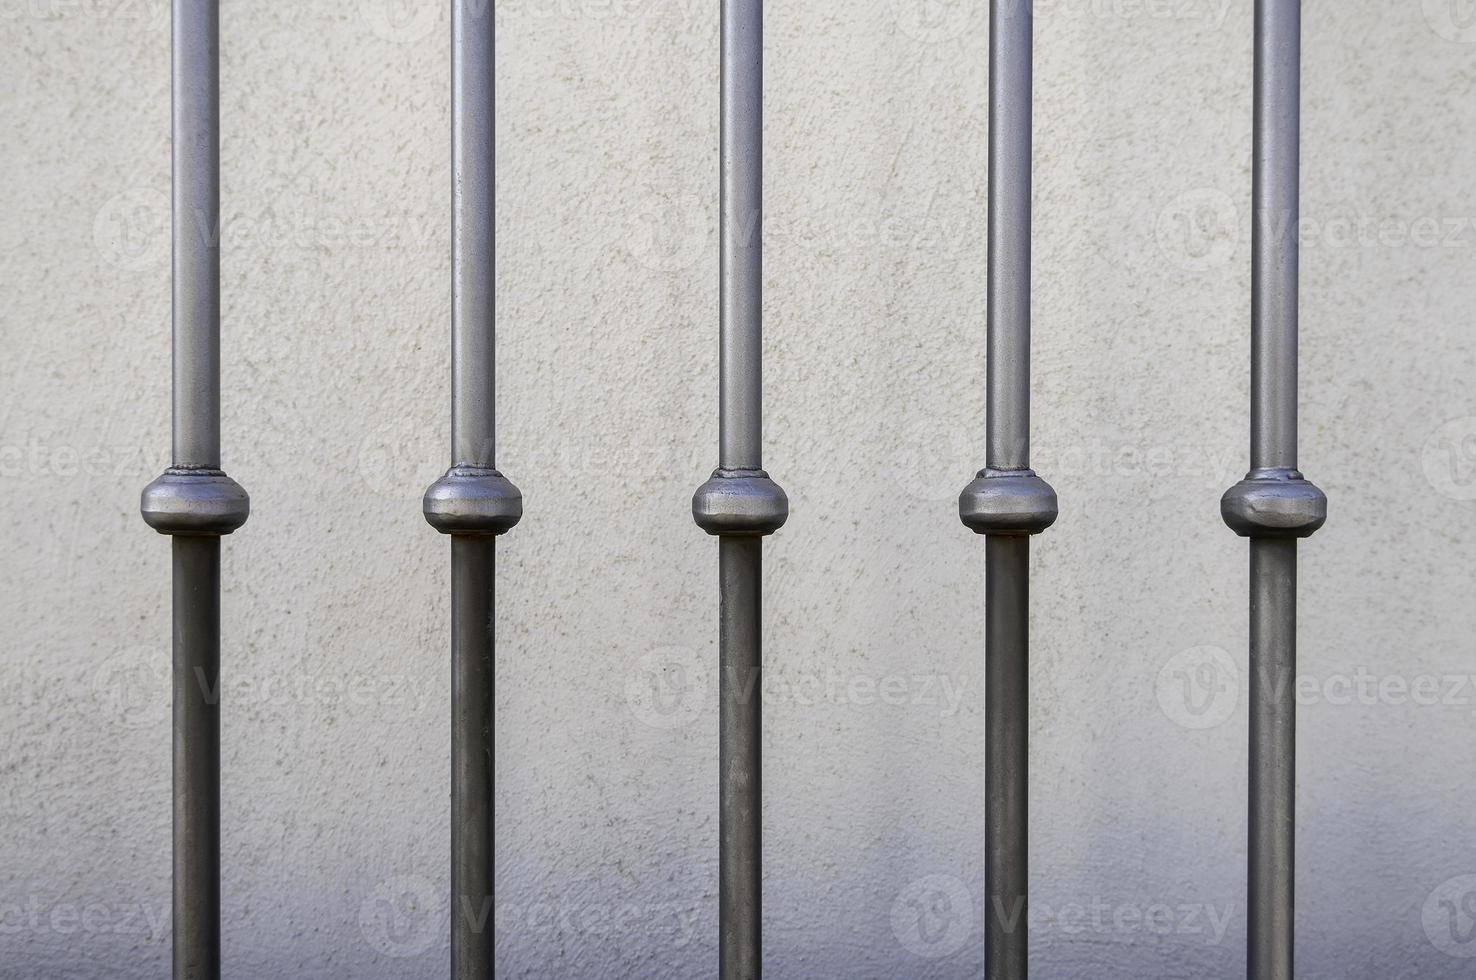 Wrought iron railing photo